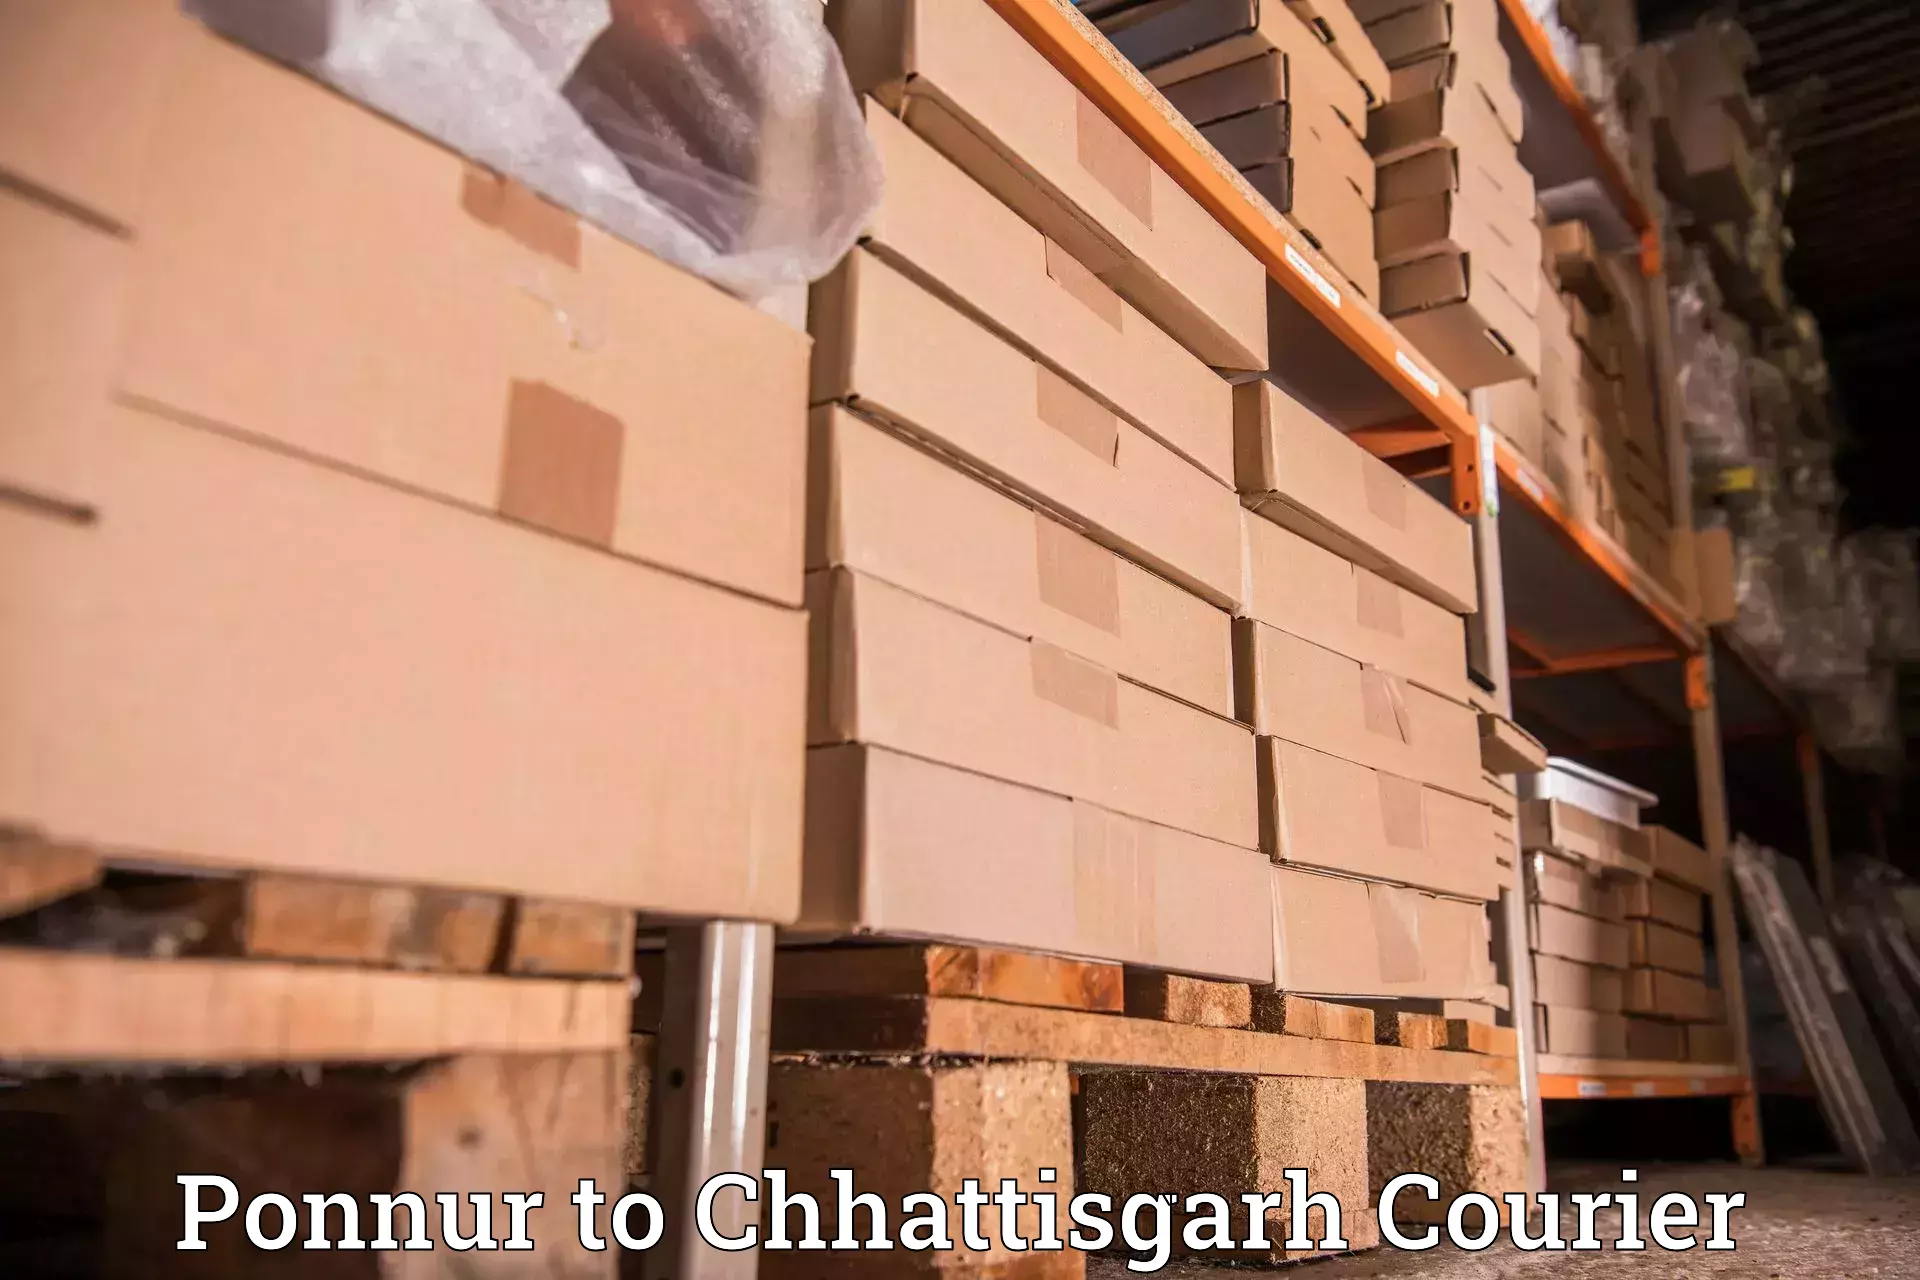 Global logistics network Ponnur to Wadrafnagar